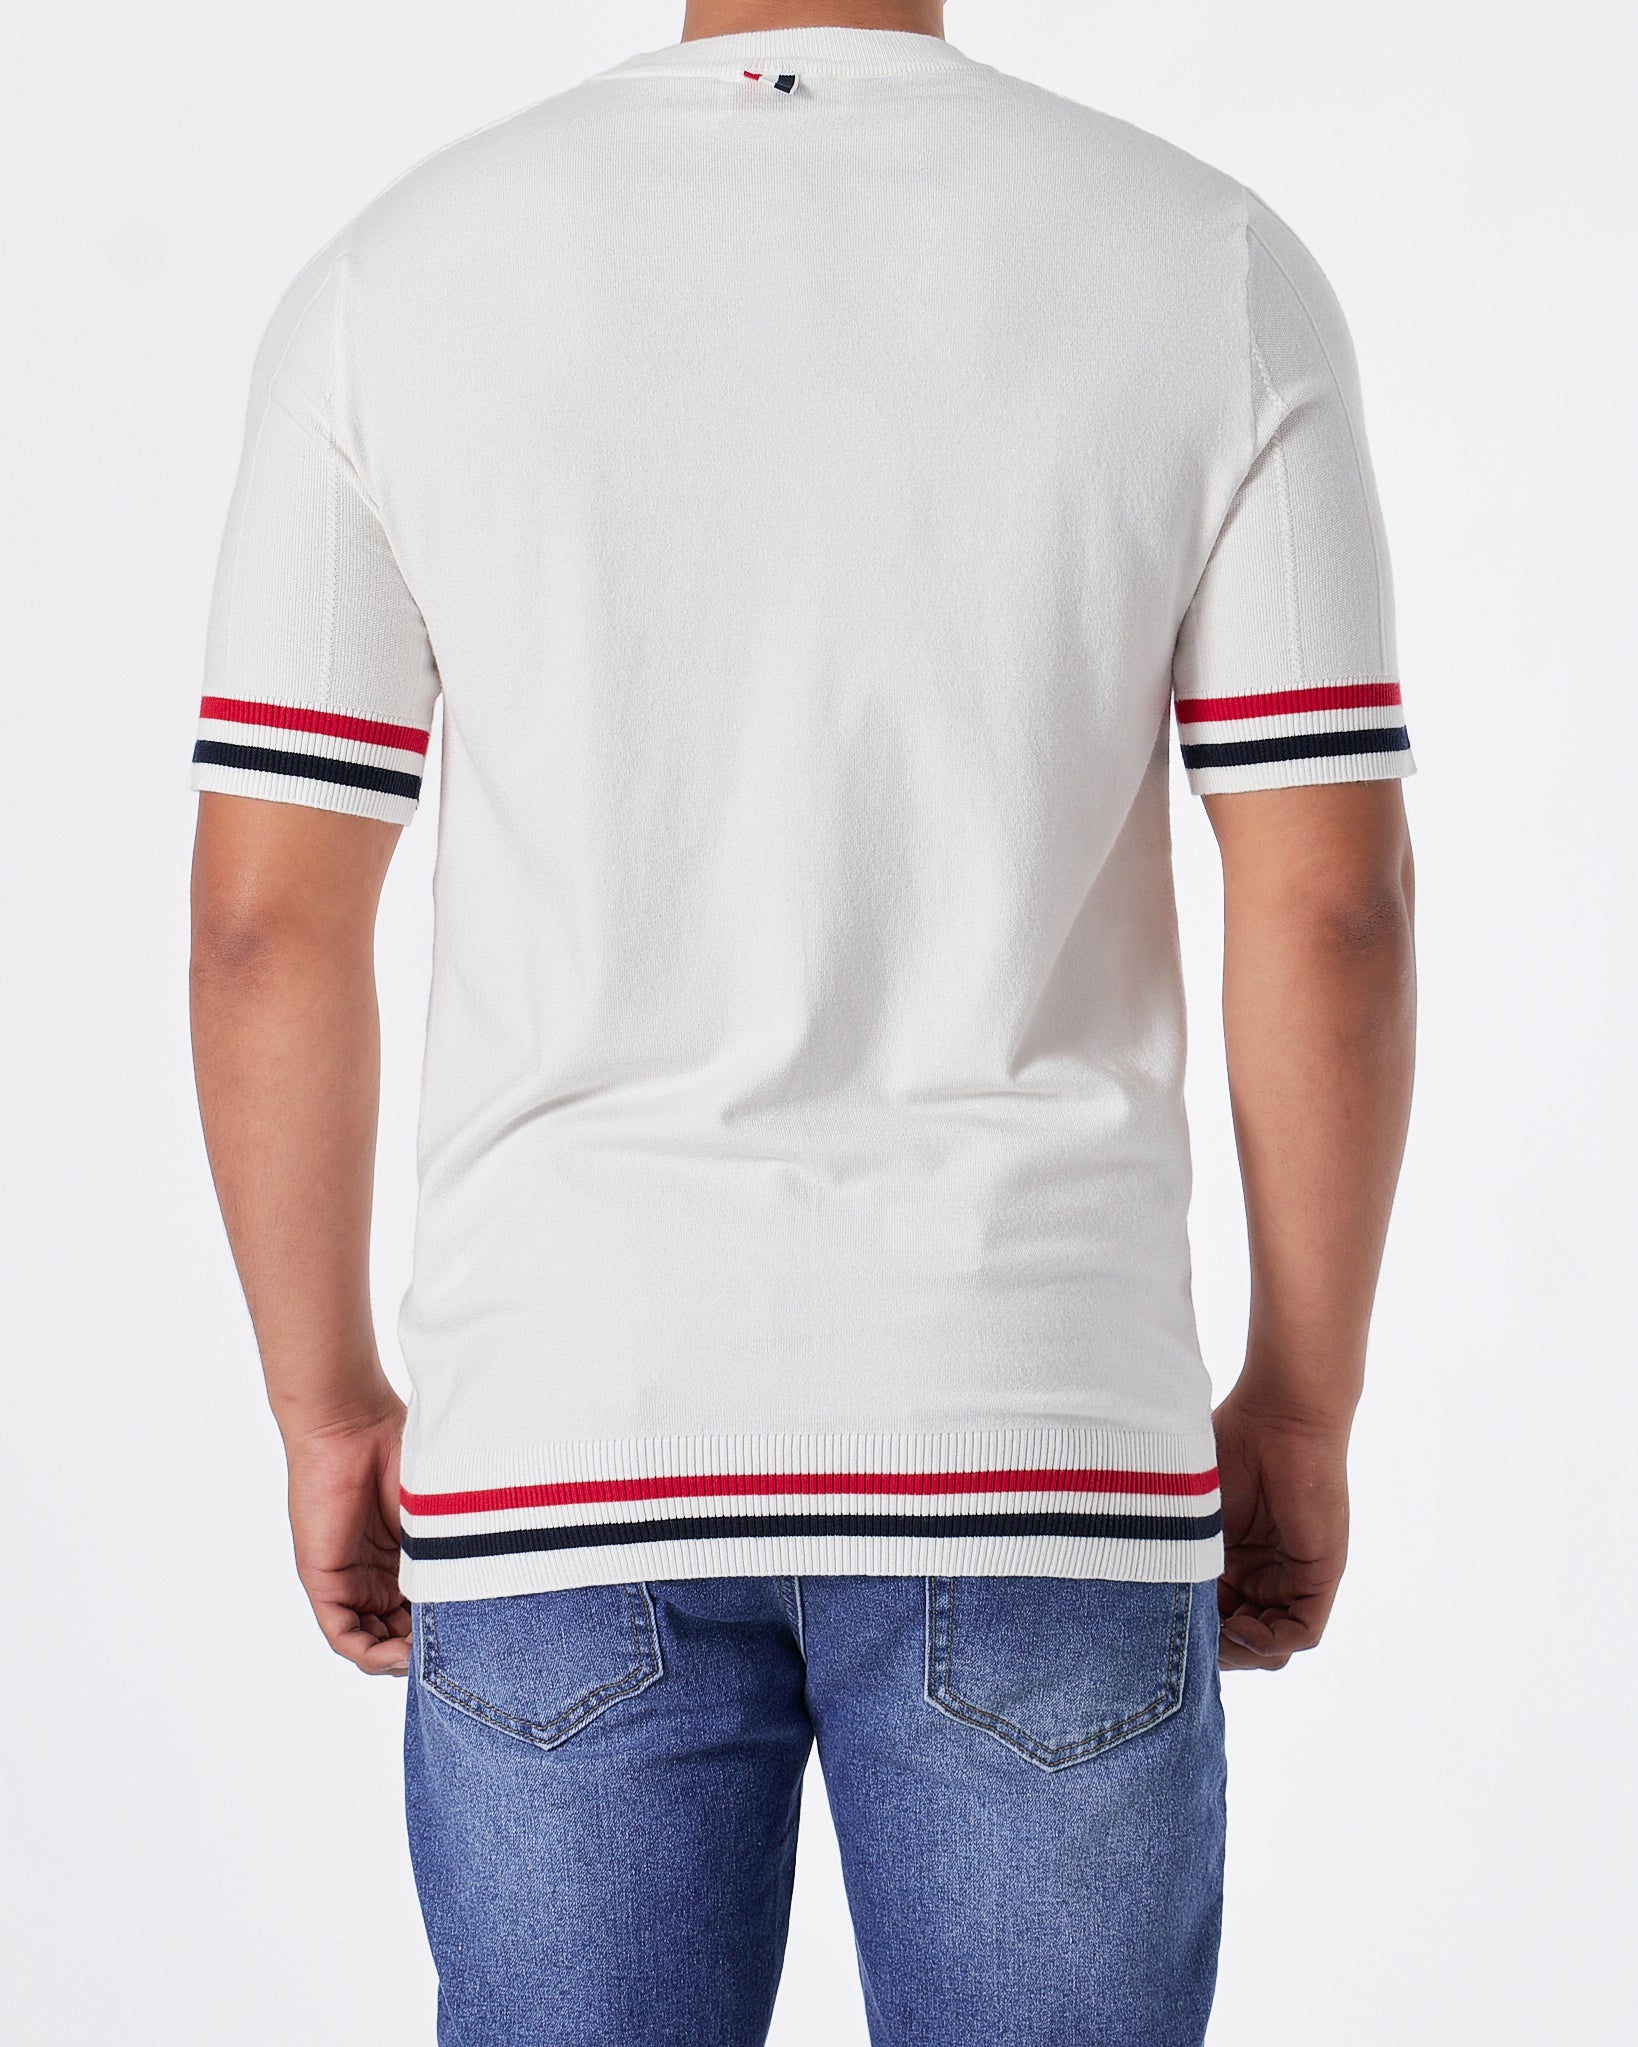 TB Tri-Colour Striped Men White Knit  T-Shirt 59.90